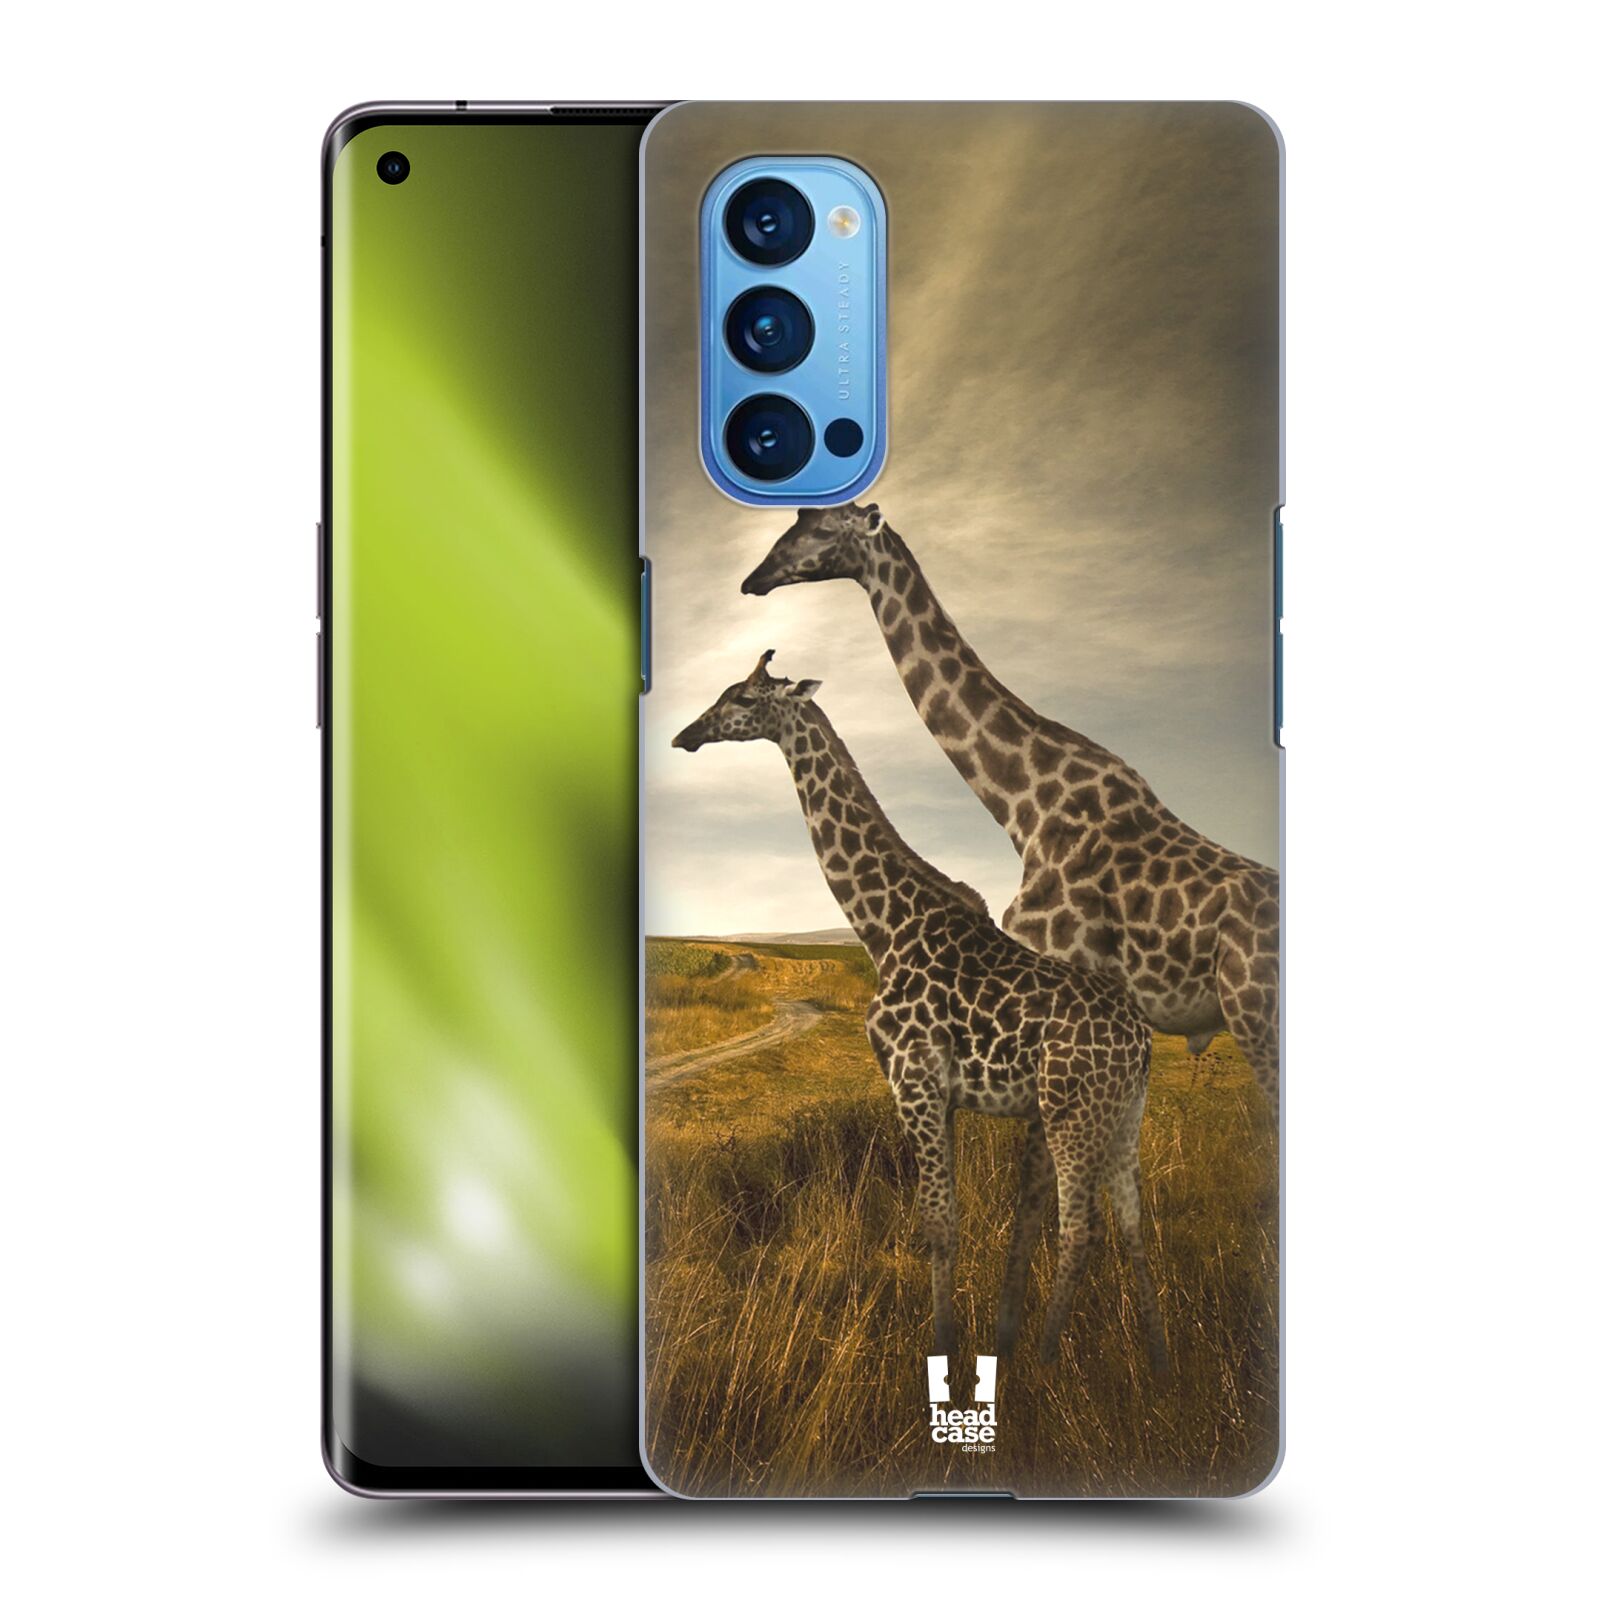 Zadní obal pro mobil Oppo Reno 4 PRO 5G - HEAD CASE - Svět zvířat žirafy